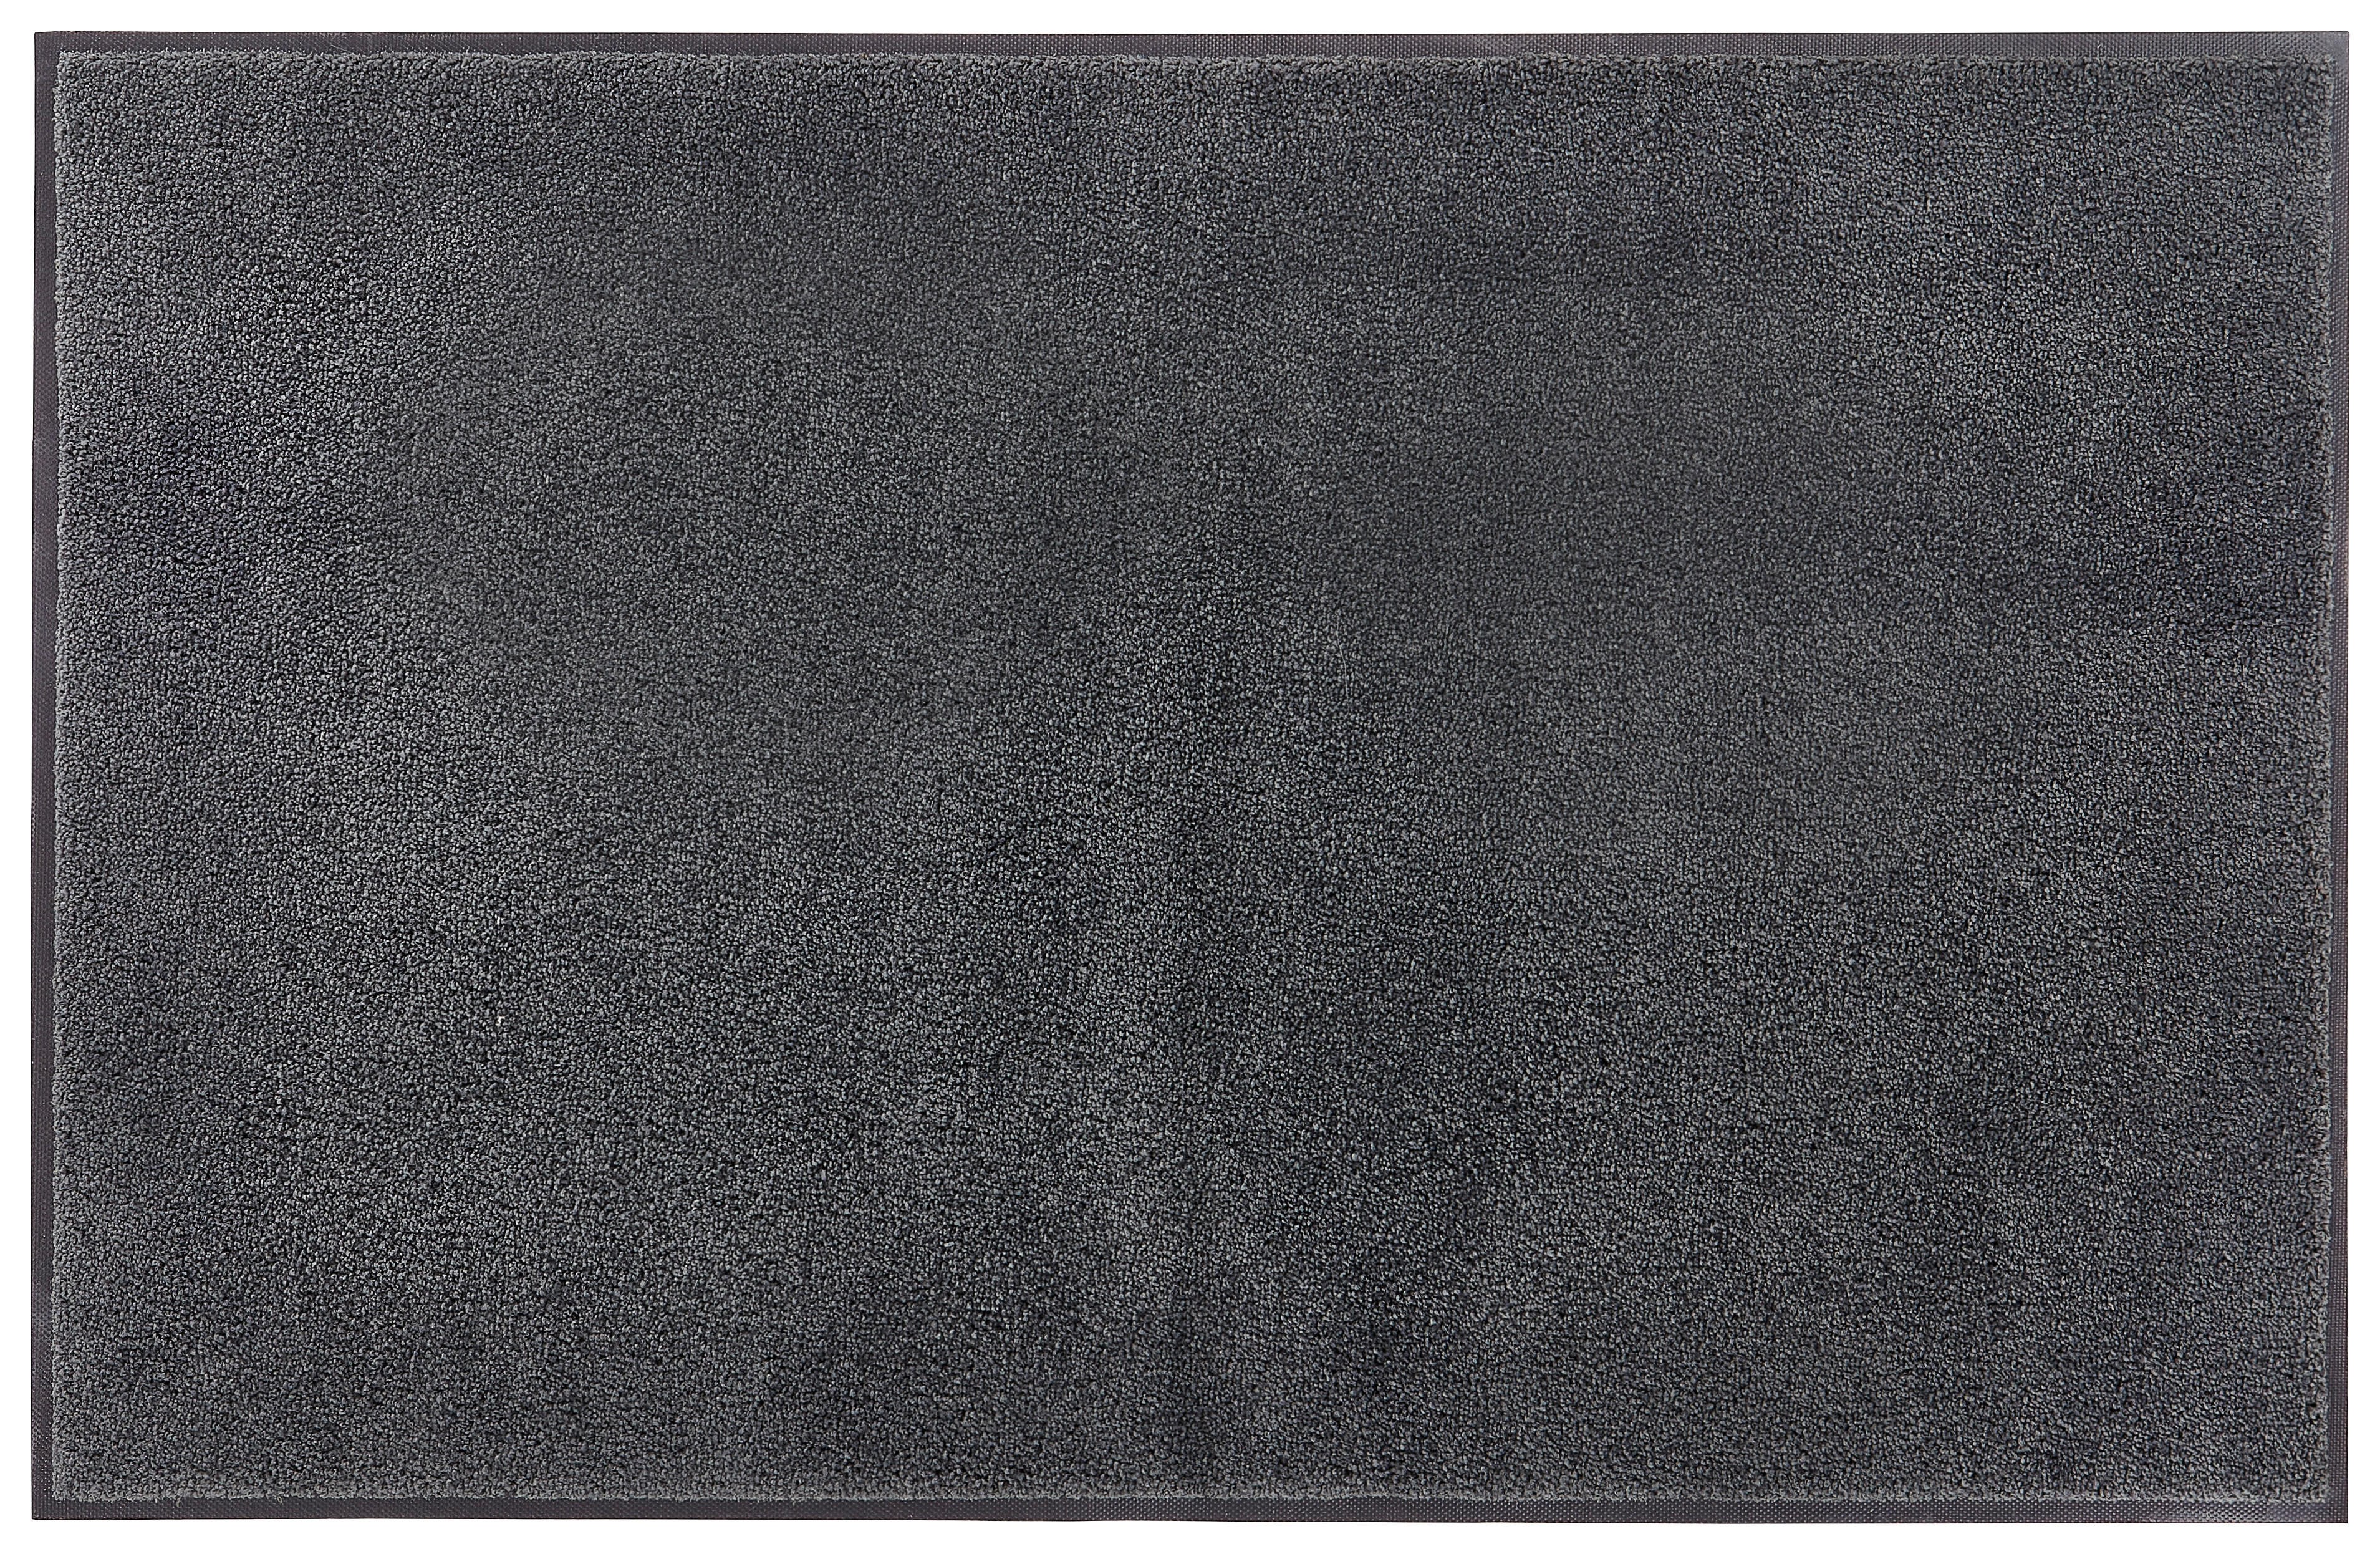 FUßMATTE  40/60 cm  Schwarz  - Schwarz, Basics, Kunststoff/Textil (40/60cm) - Esposa